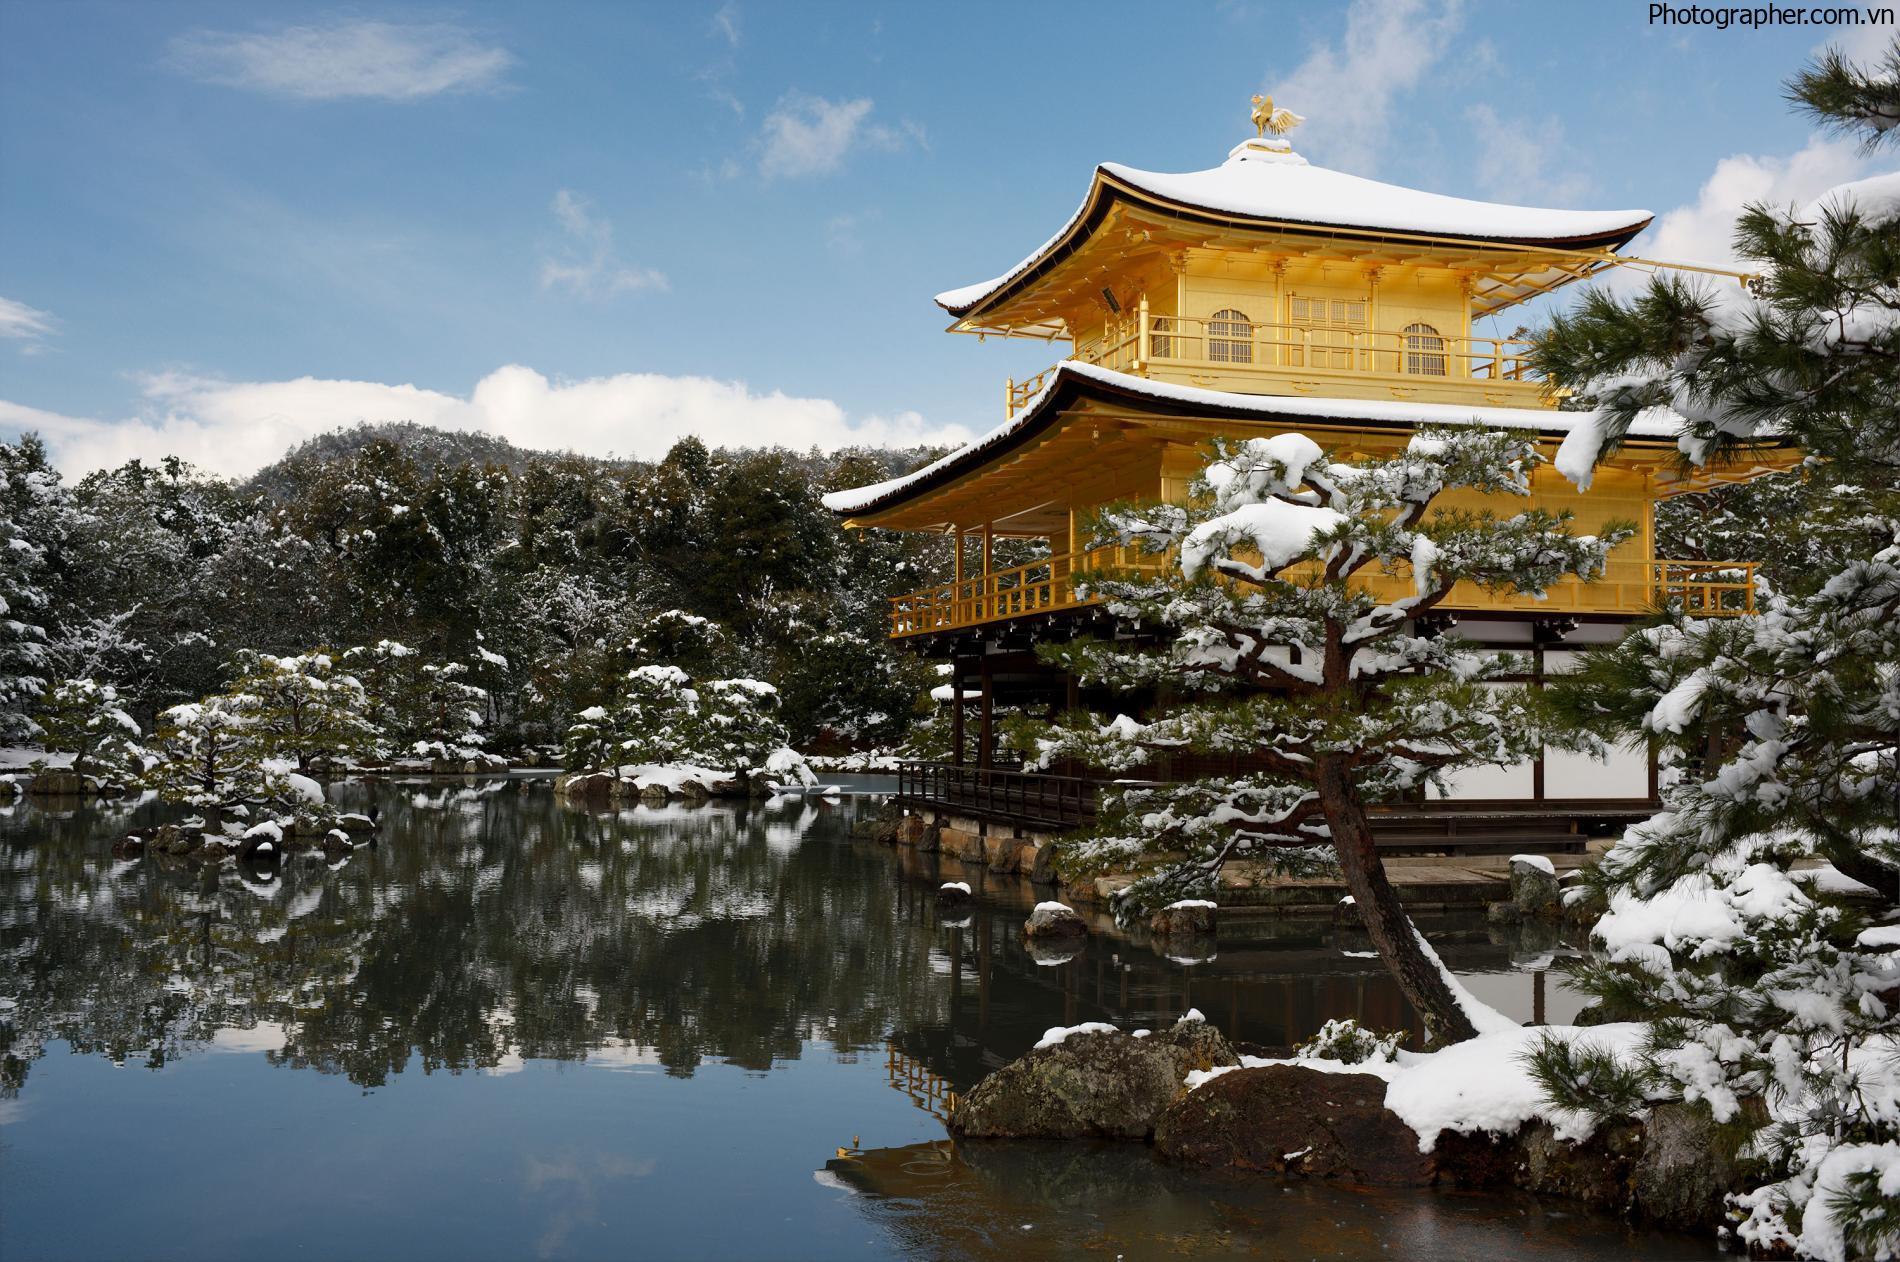 Tuyển tập những hình ảnh đẹp nhất về Nhật Bản